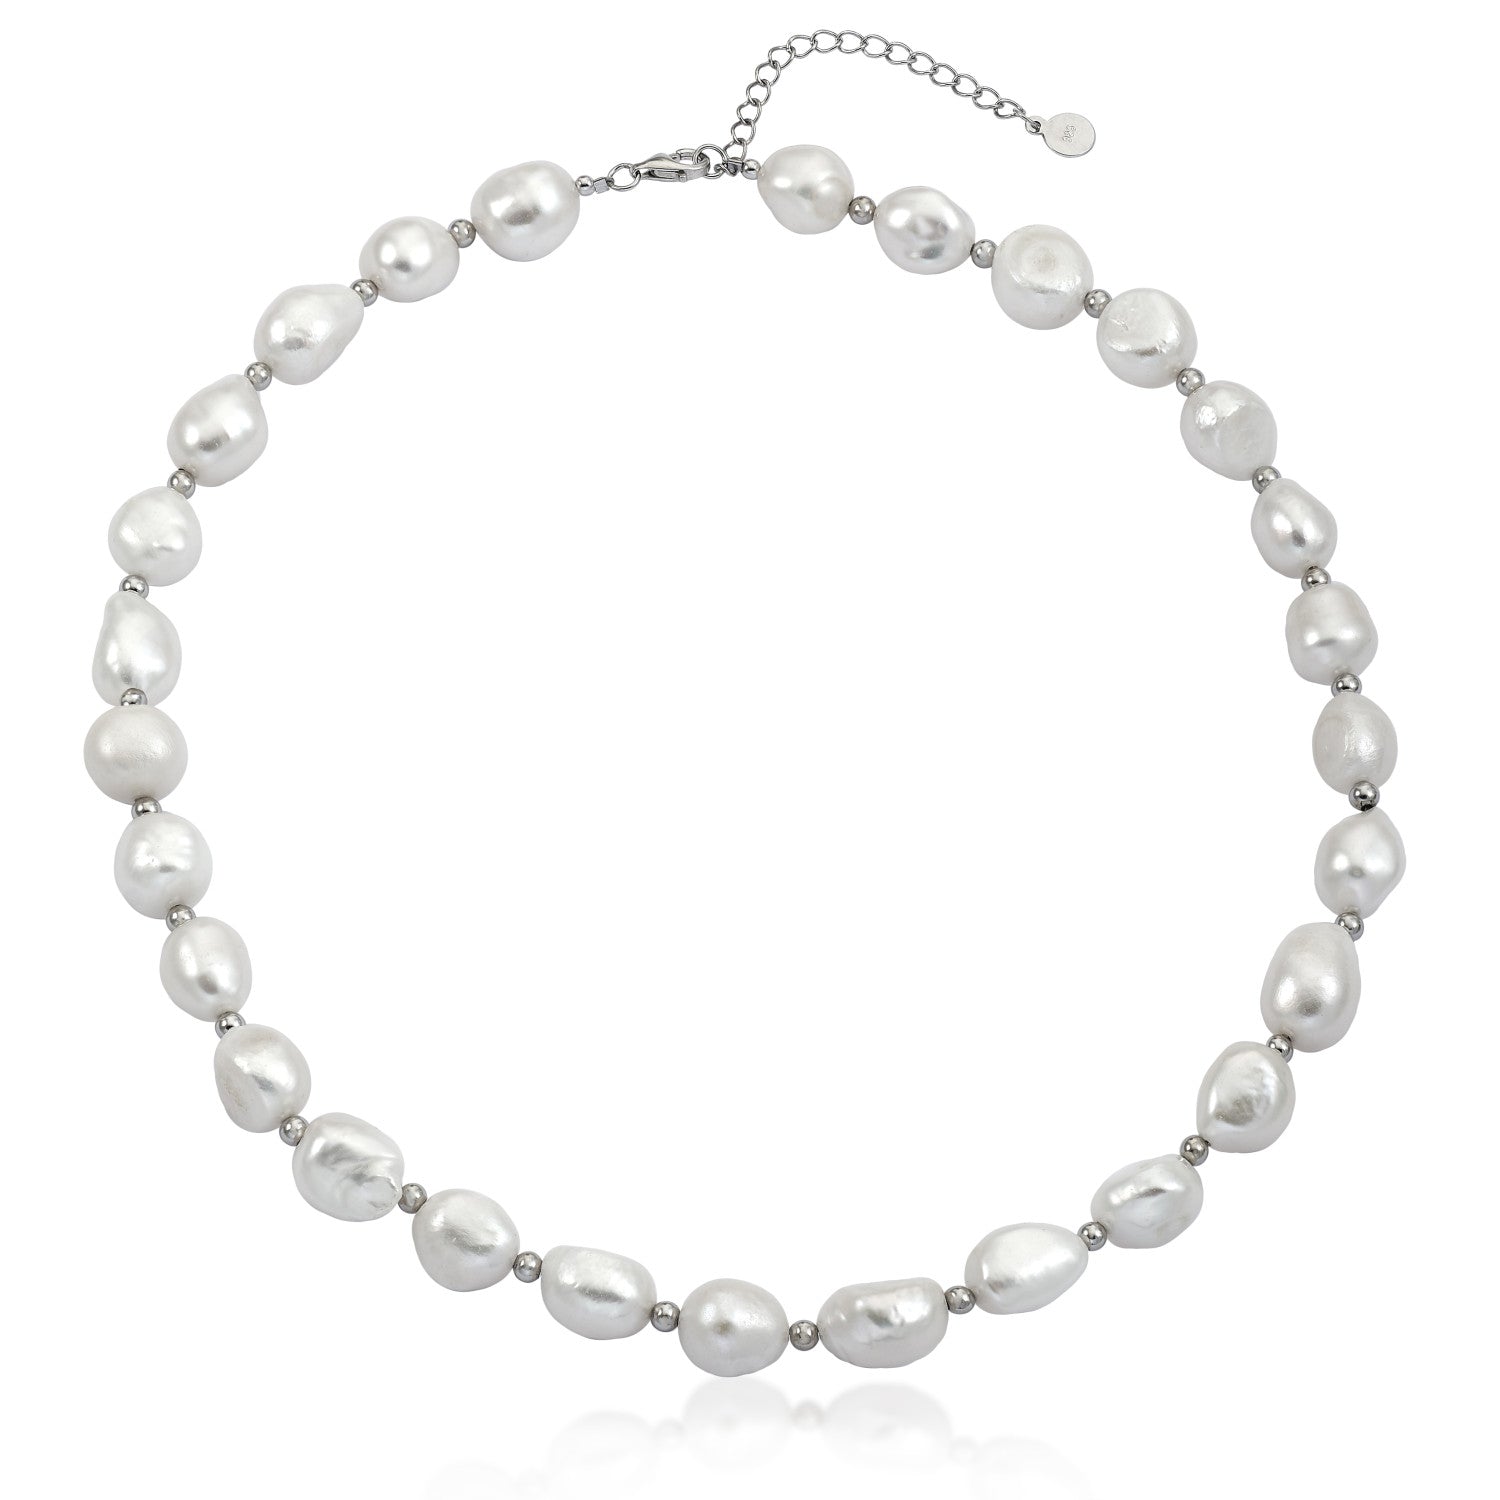 Collares cortos de plata diseño de perla barroca